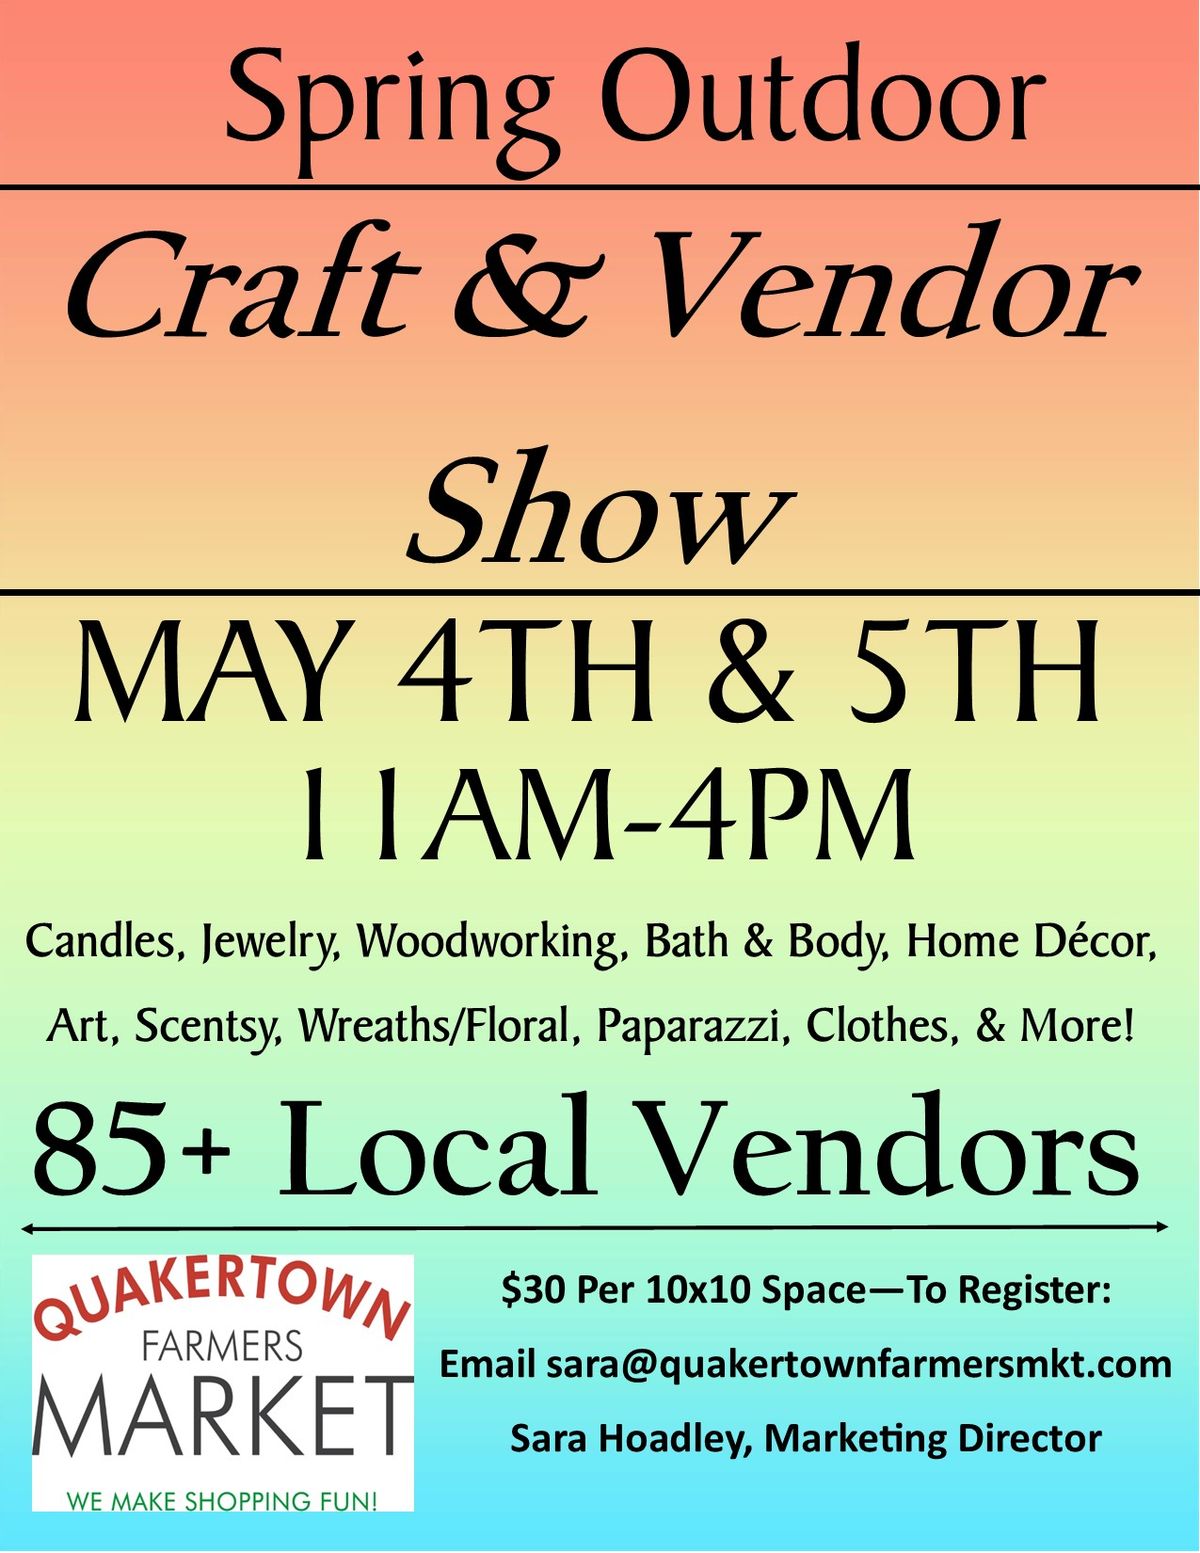 Annual Spring Outdoor Craft & Vendor Show